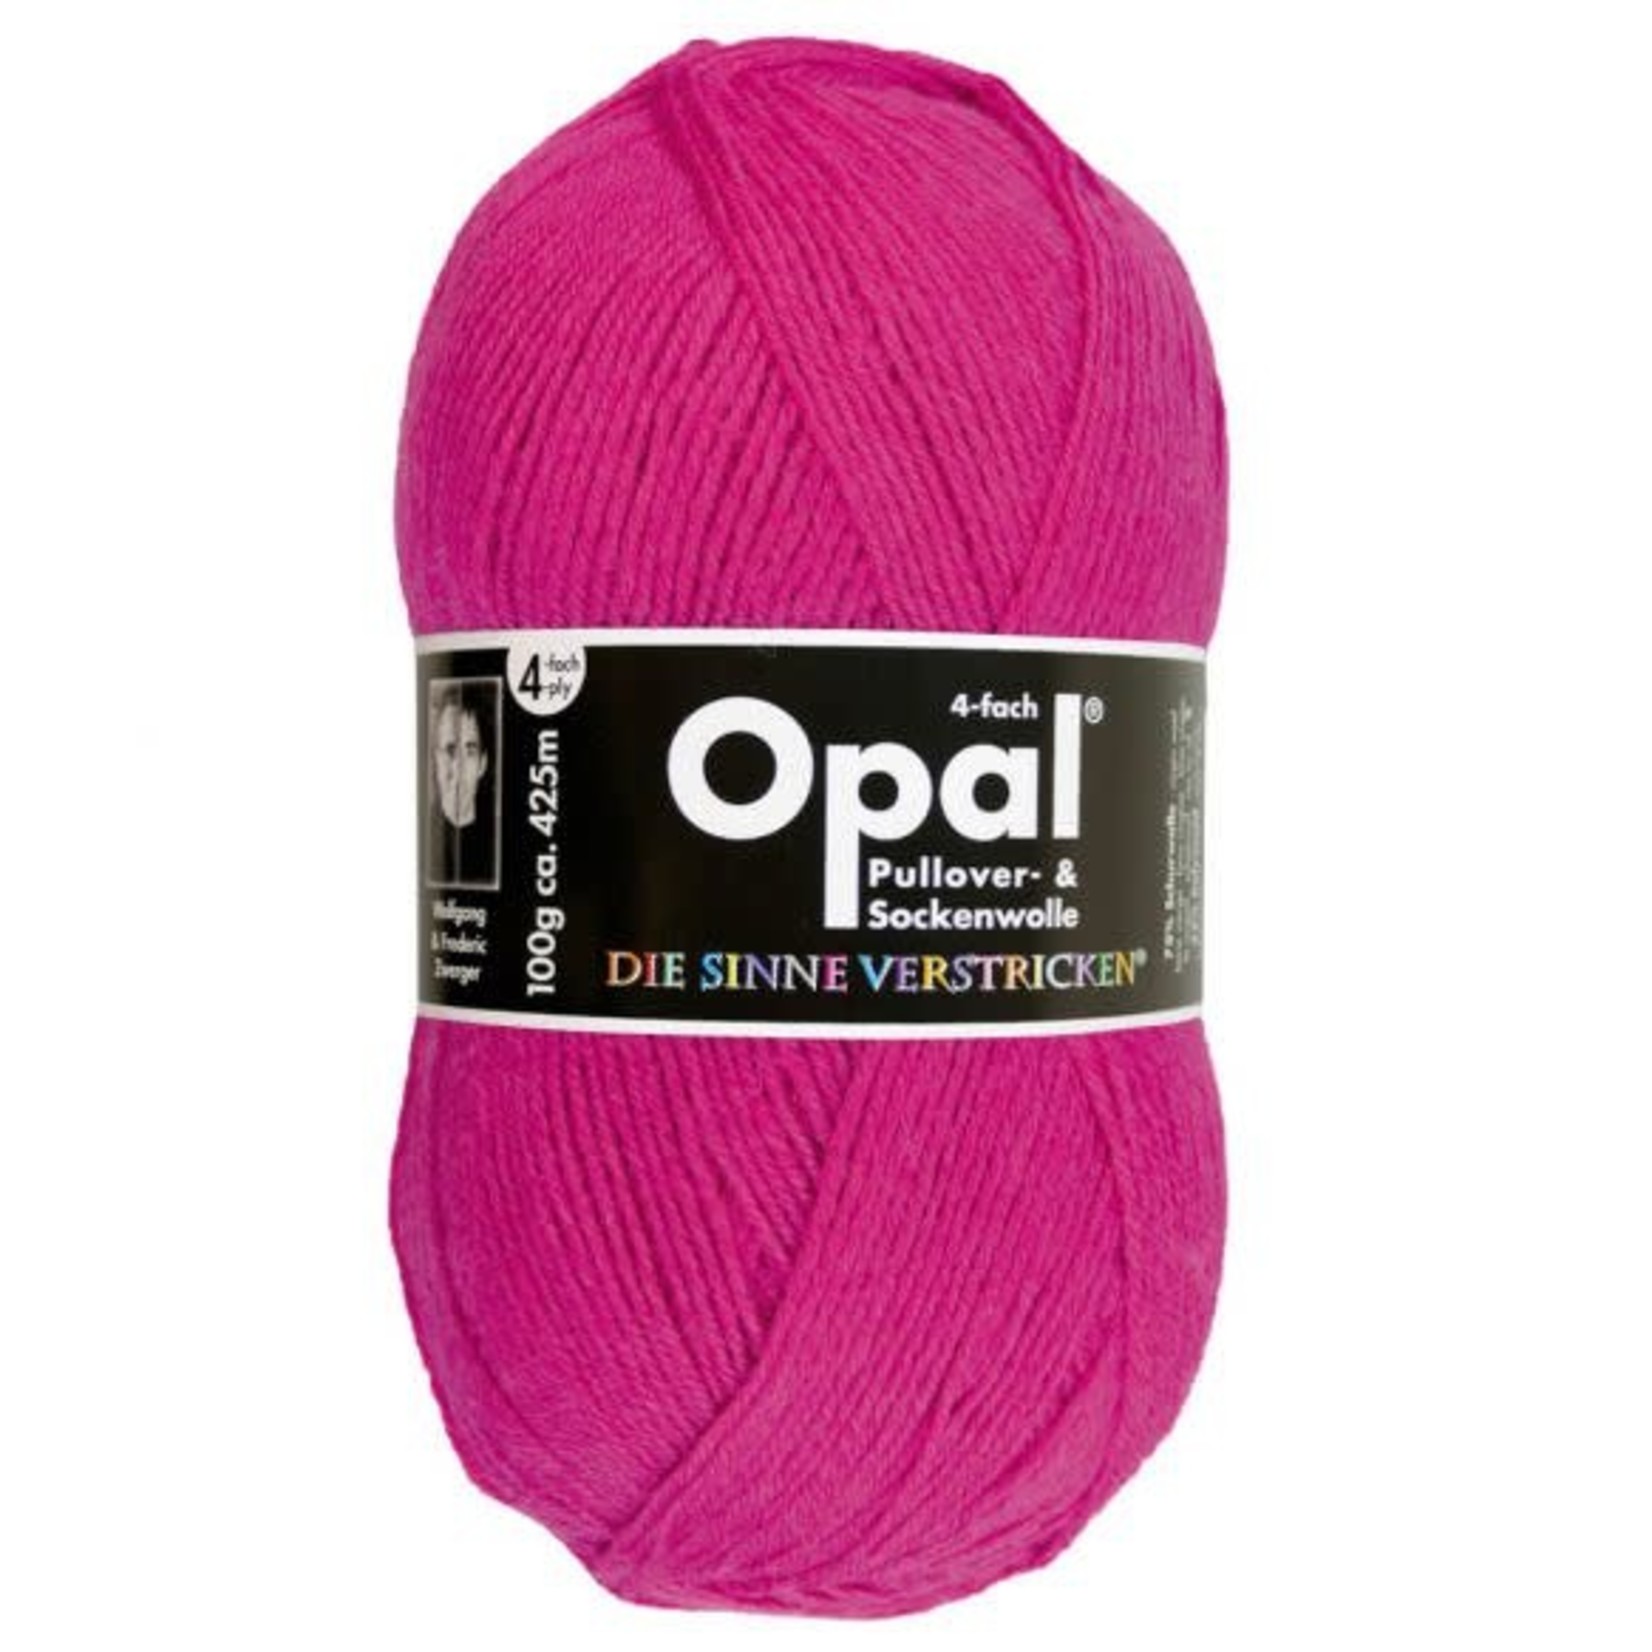 Opal Yarn Solid Sock Yarn by Opal